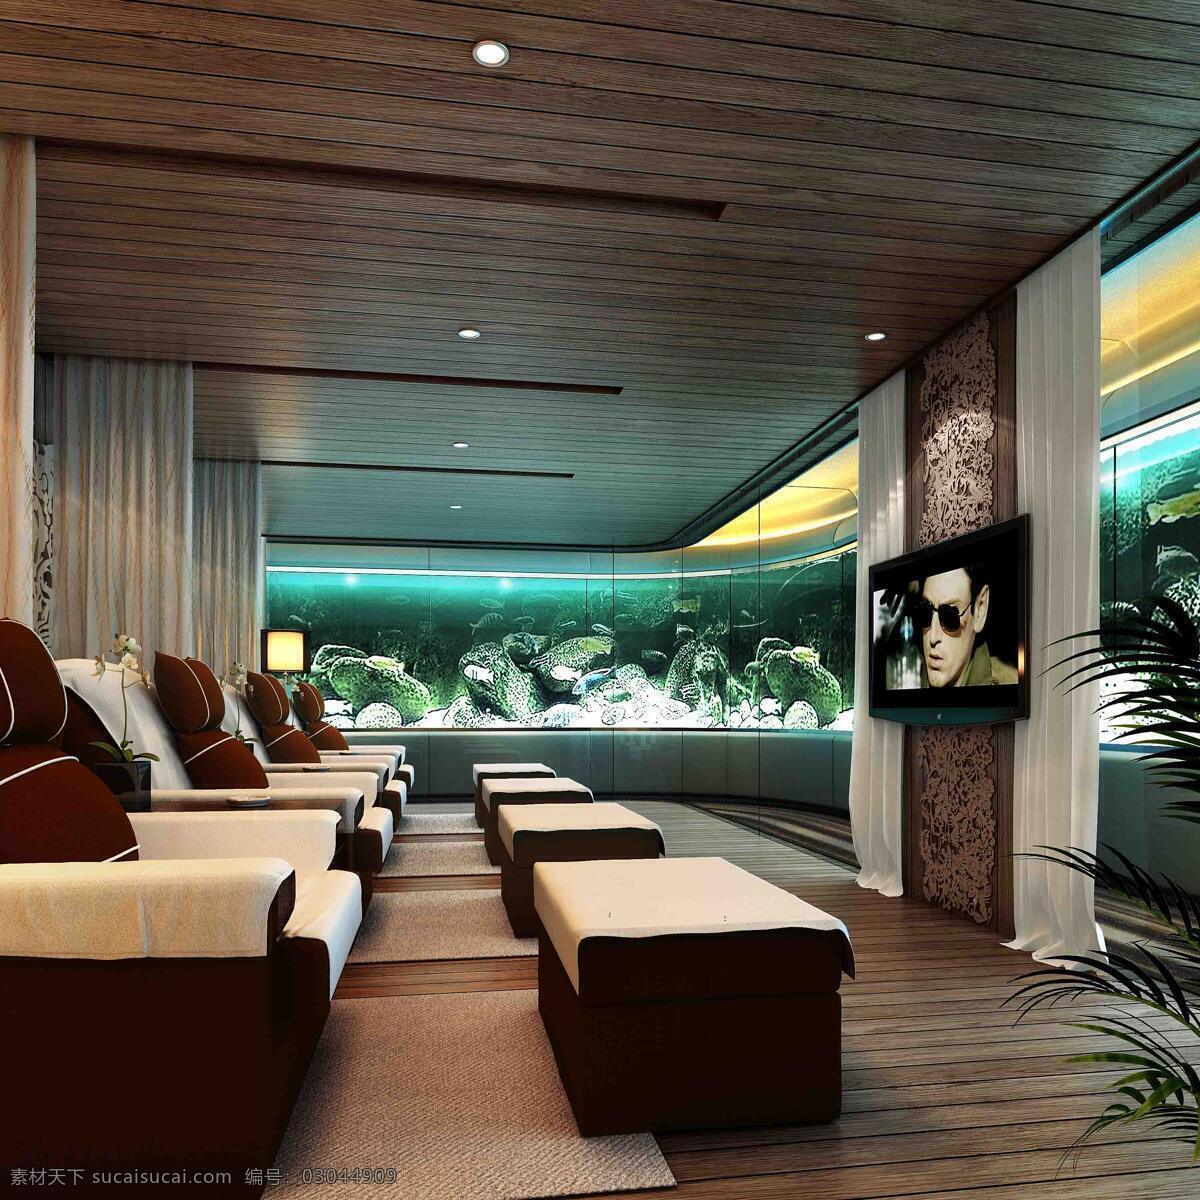 足浴 中心 室内设计 效果图 按摩 环境设计 室内空间 家居装饰素材